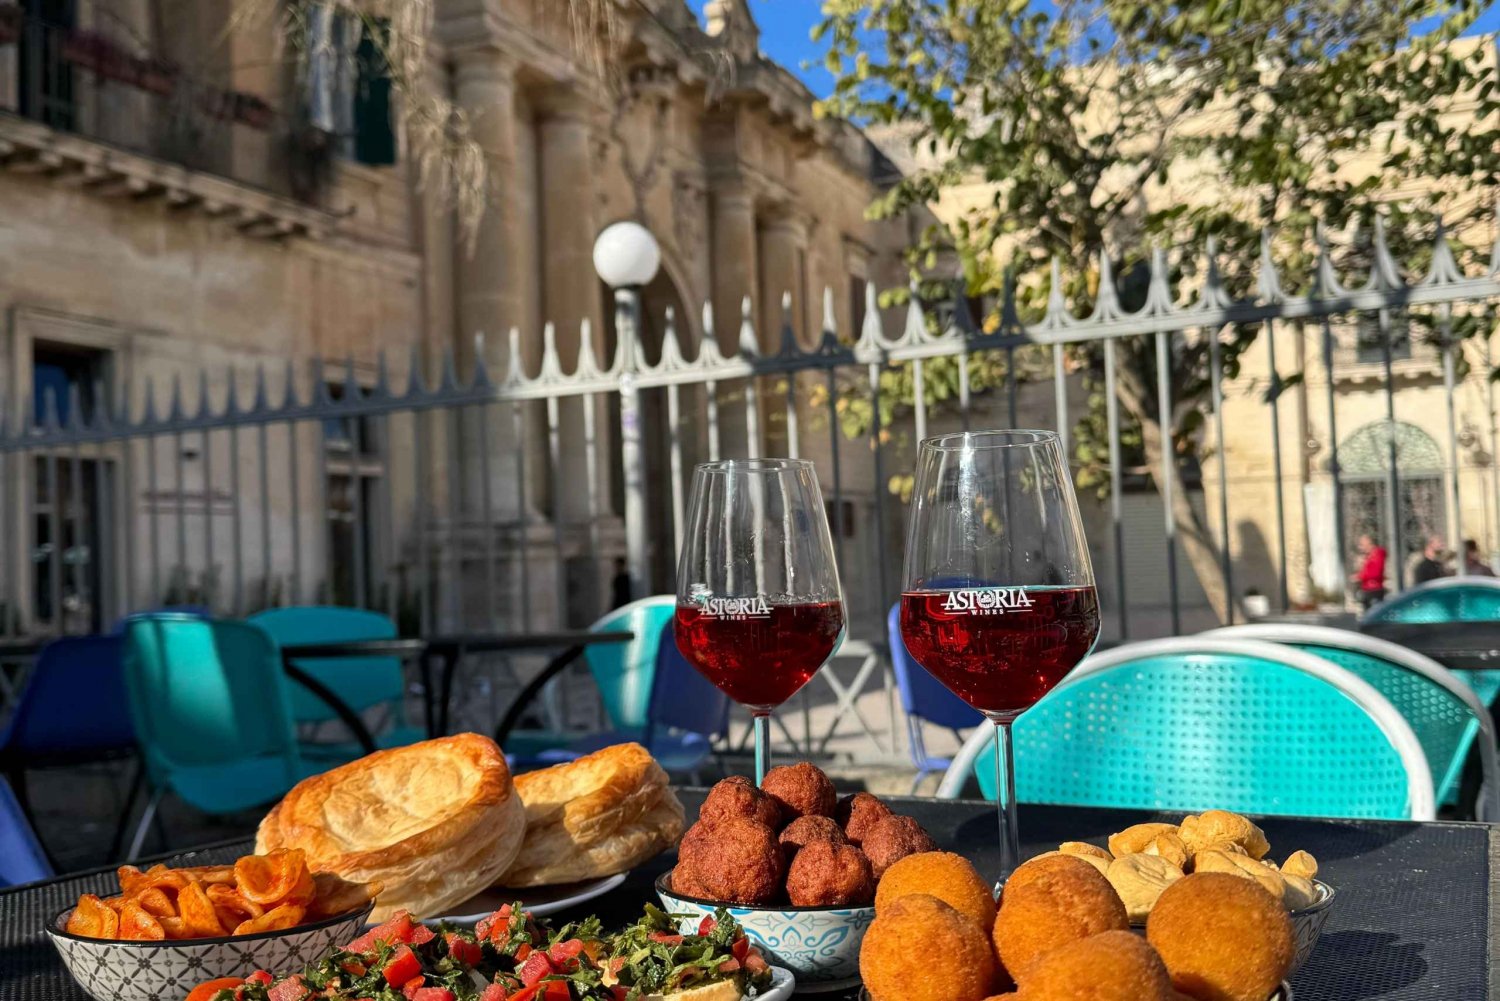 Streetfood Lecce: Wandeltour met gids met eten en wijnen.